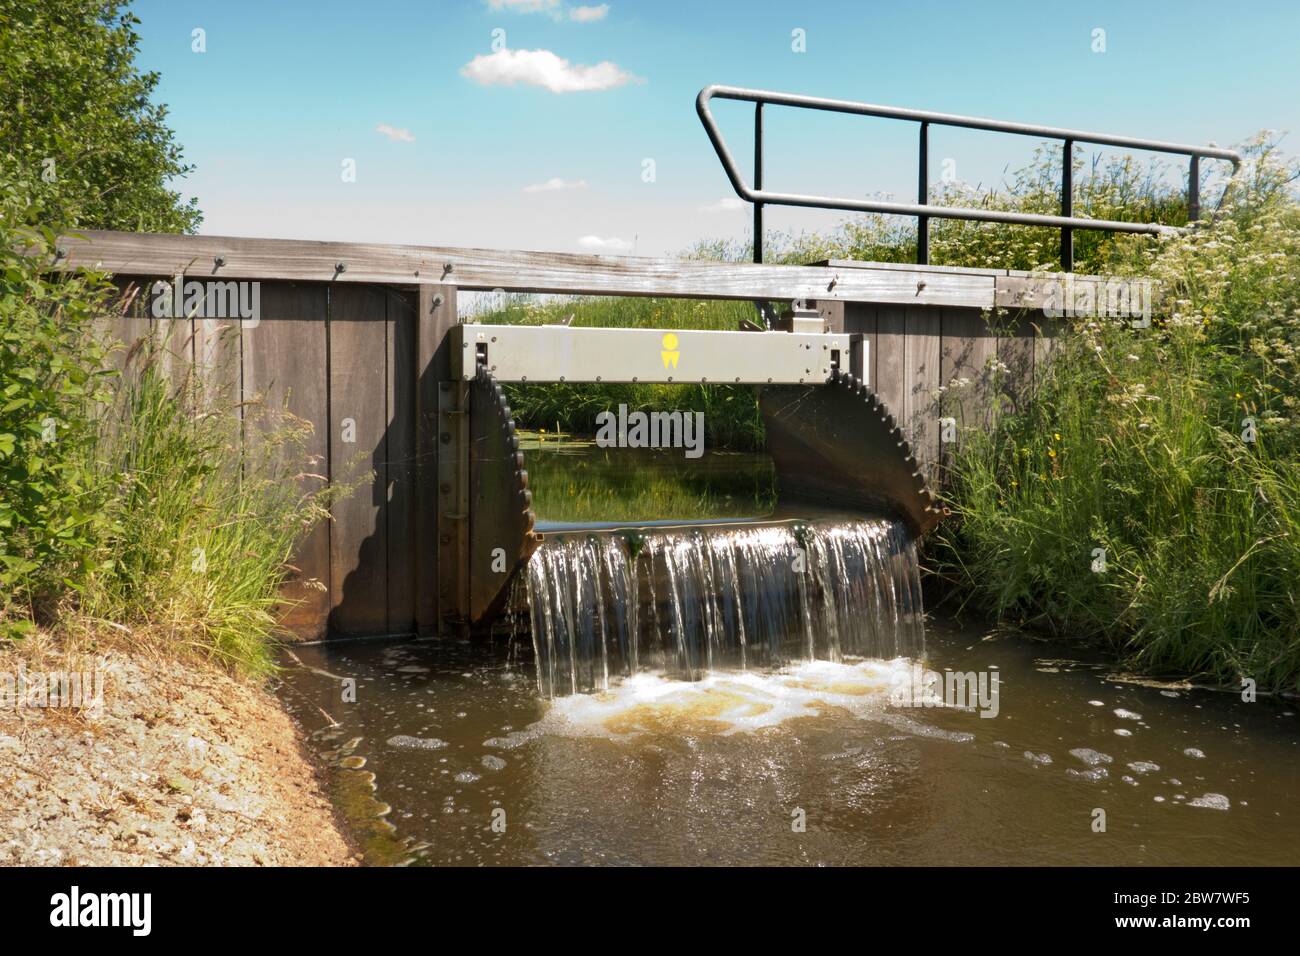 Petit barrage de débordement dans une rivière pour contrôler le niveau d'eau dans une réserve naturelle Banque D'Images